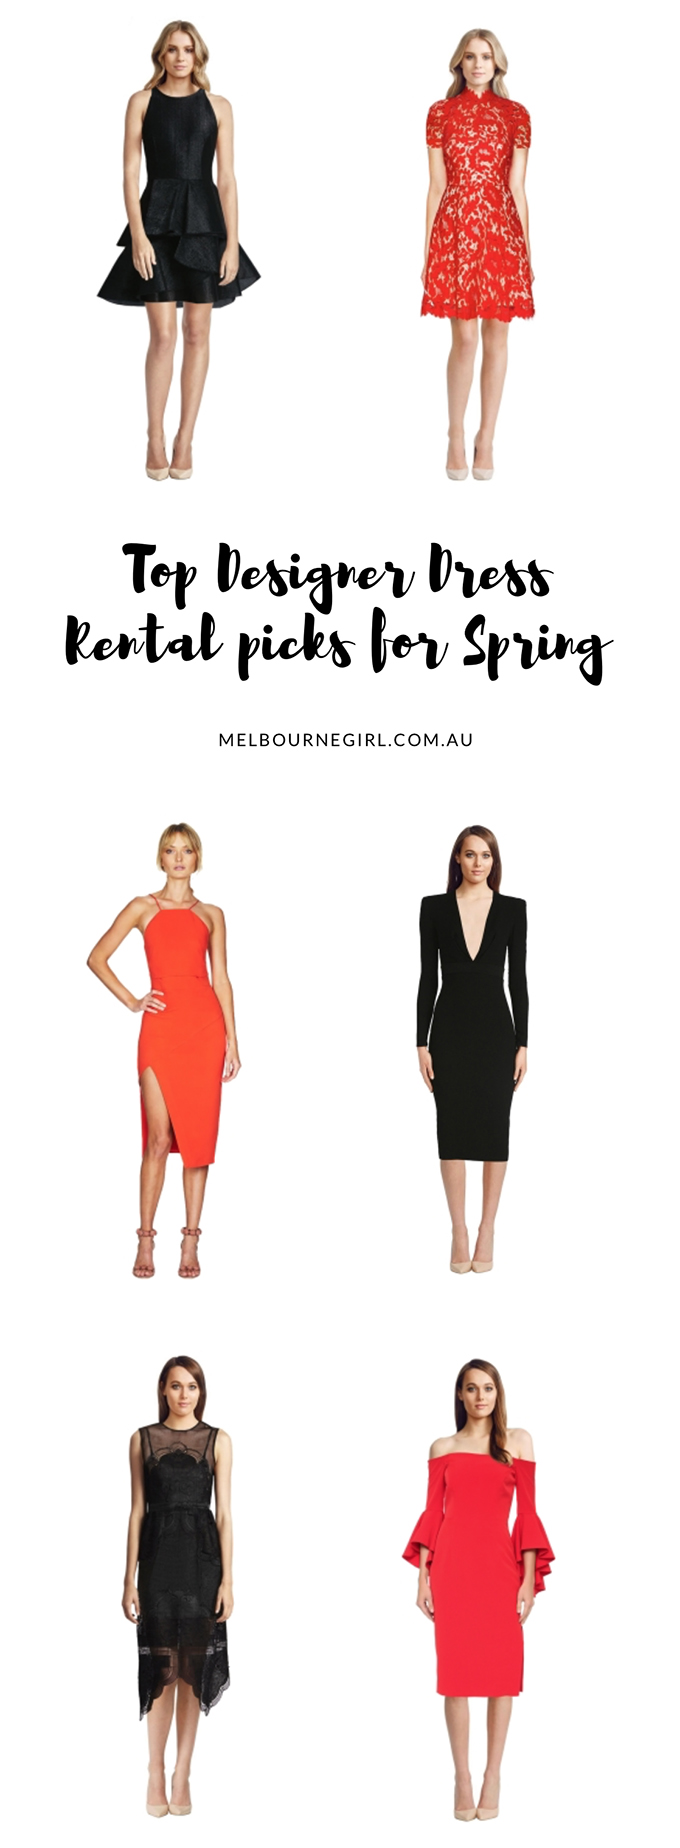 Top Designer Dress Rental picks for Spring